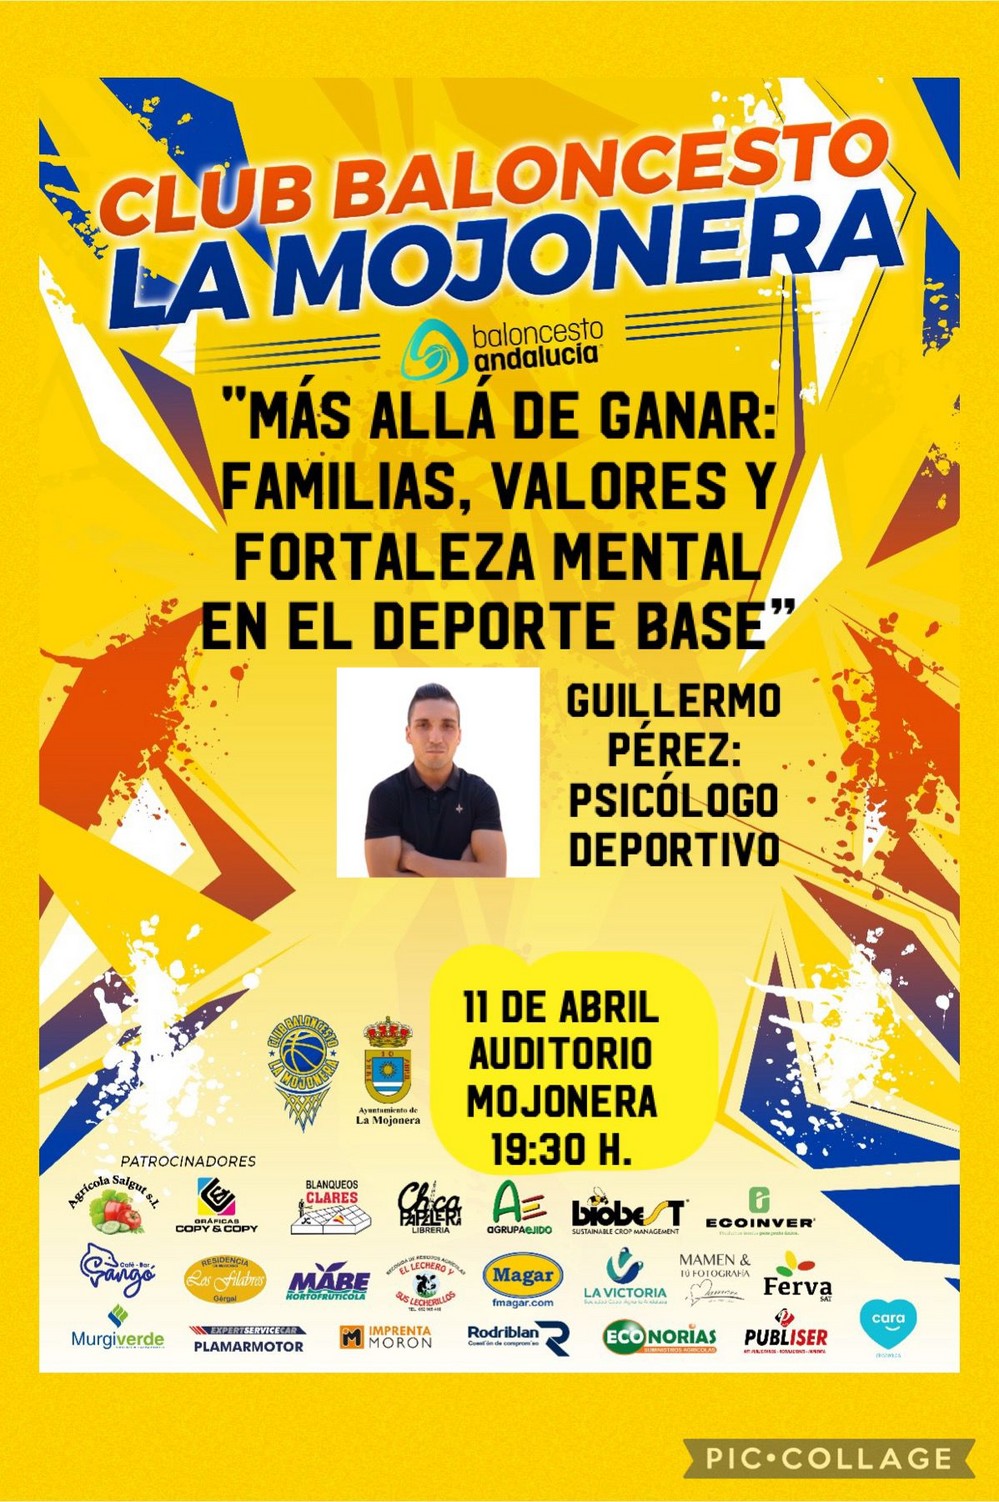 El CB La Mojonera realiza formación para sus entrenadores y familias el próximo jueves